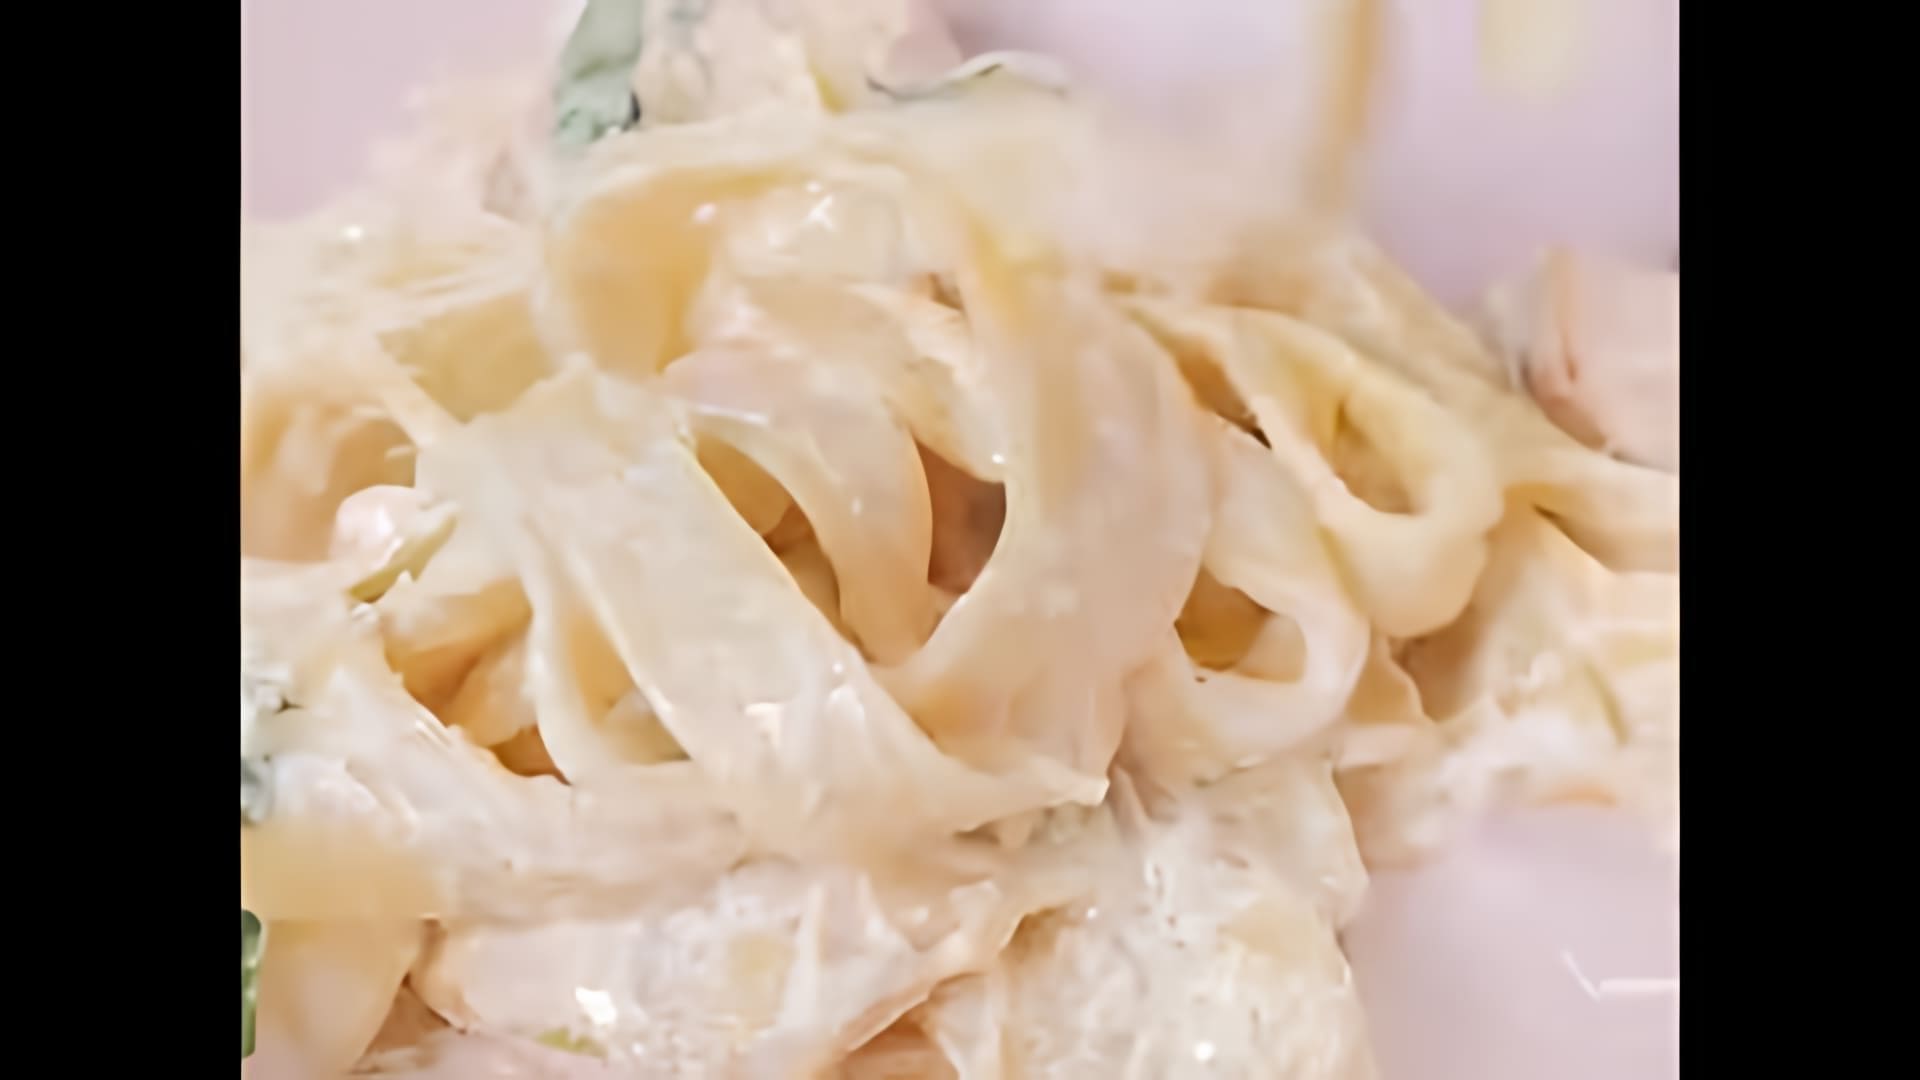 В этом видео демонстрируется процесс приготовления быстрой пасты с семгой в сливочном соусе